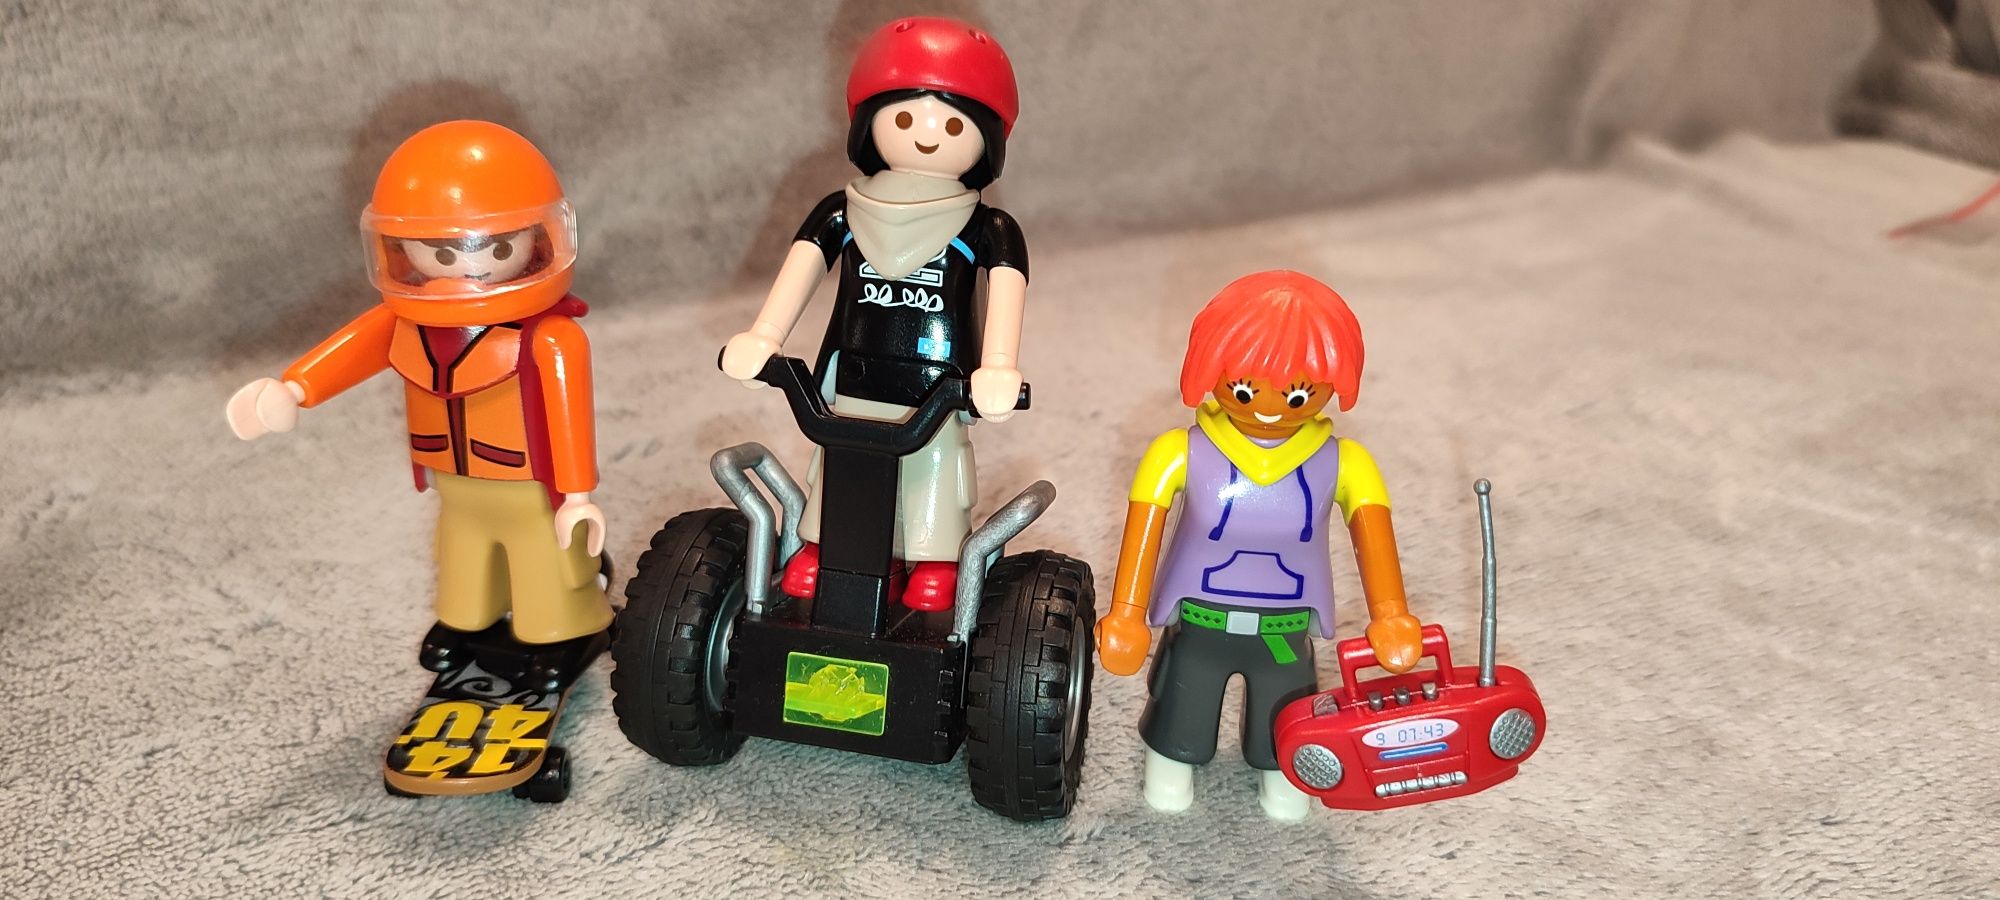 Playmobil zestaw sportowy, hulajnoga, rower, deskorolka, gokard, balan